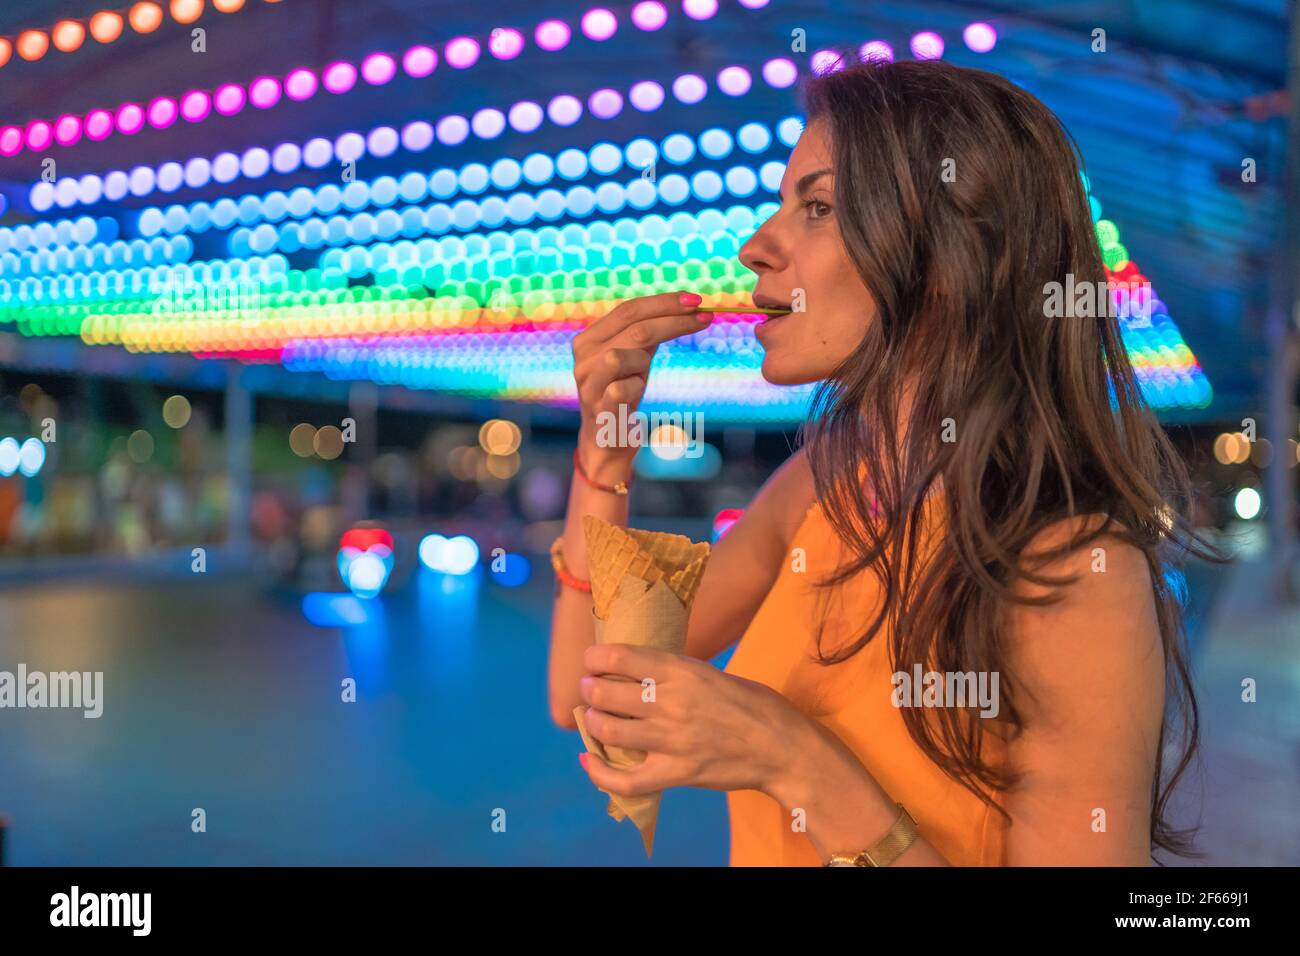 Porträt einer glücklichen Frau, die Eis mit Waffelkegel isst Beim Karneval mit bunten Lichtern im Hintergrund Stockfoto